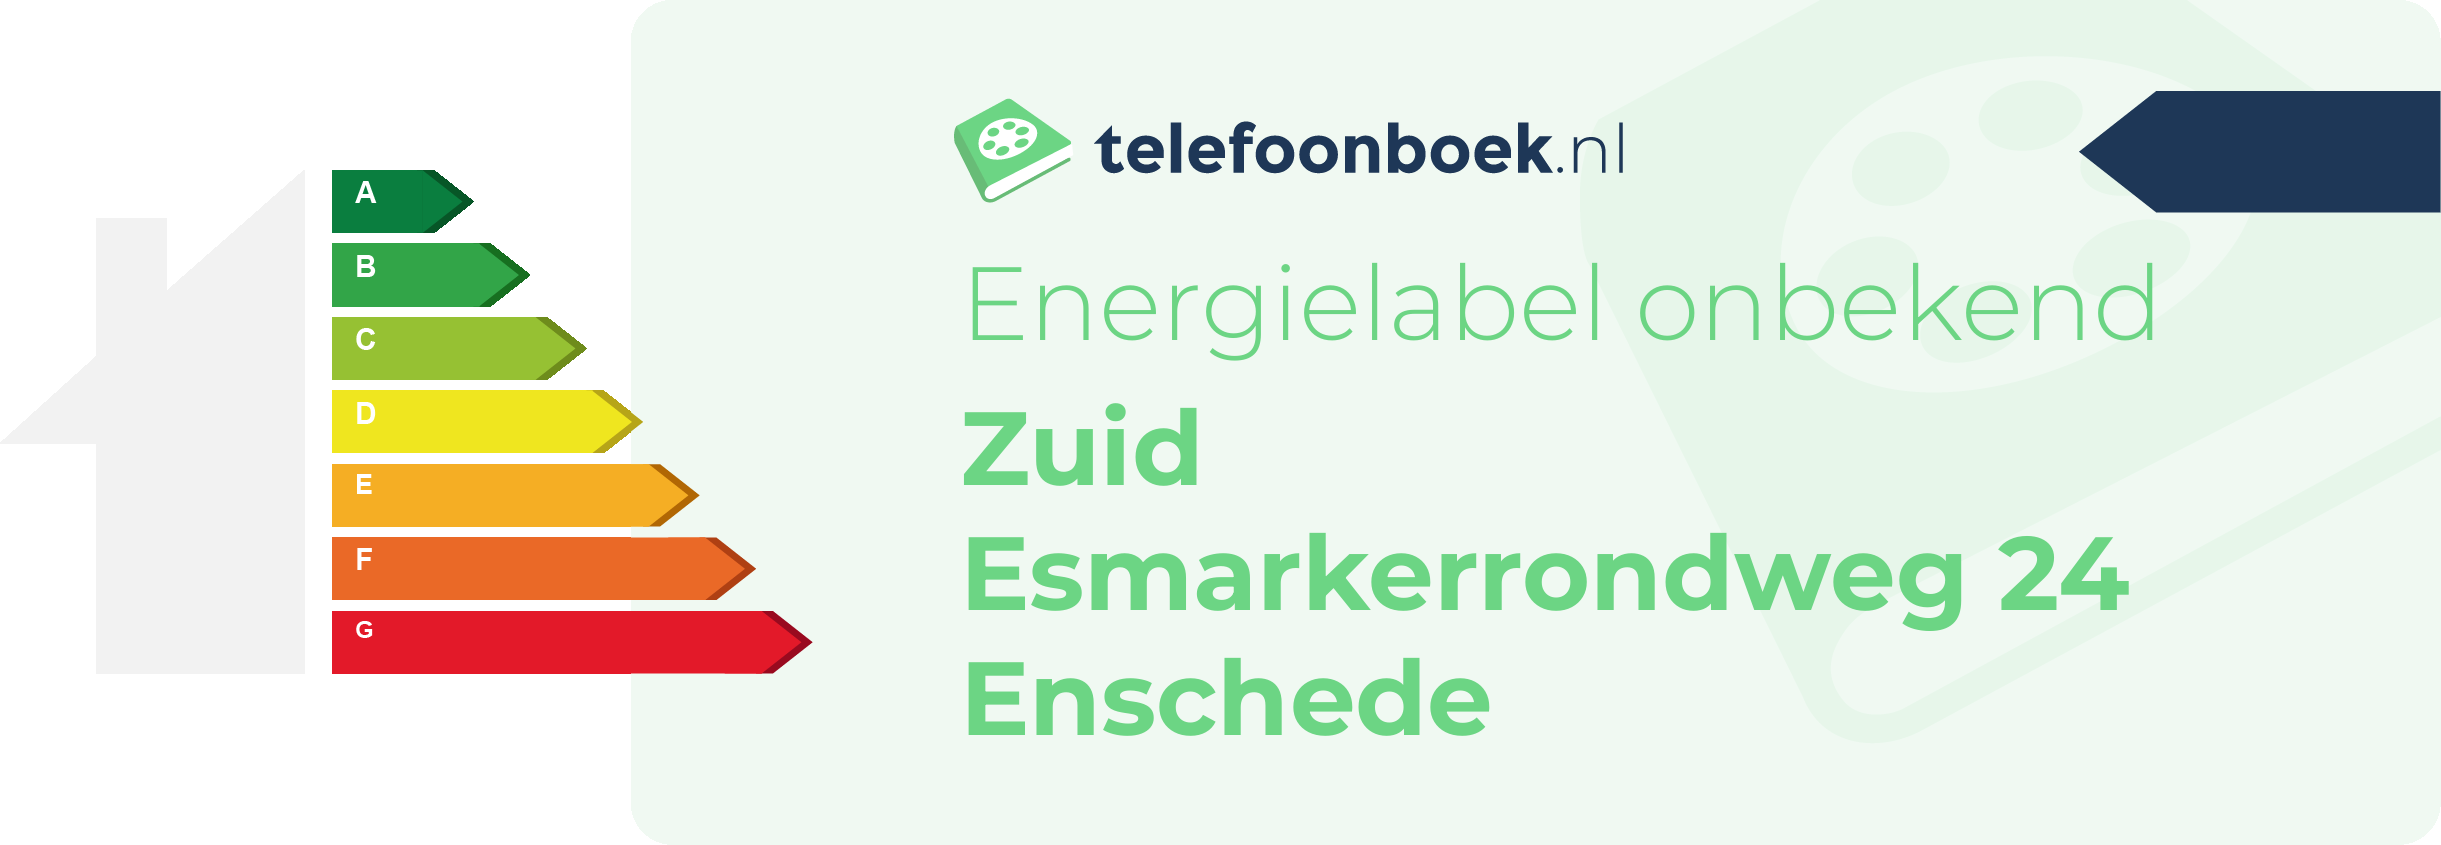 Energielabel Zuid Esmarkerrondweg 24 Enschede